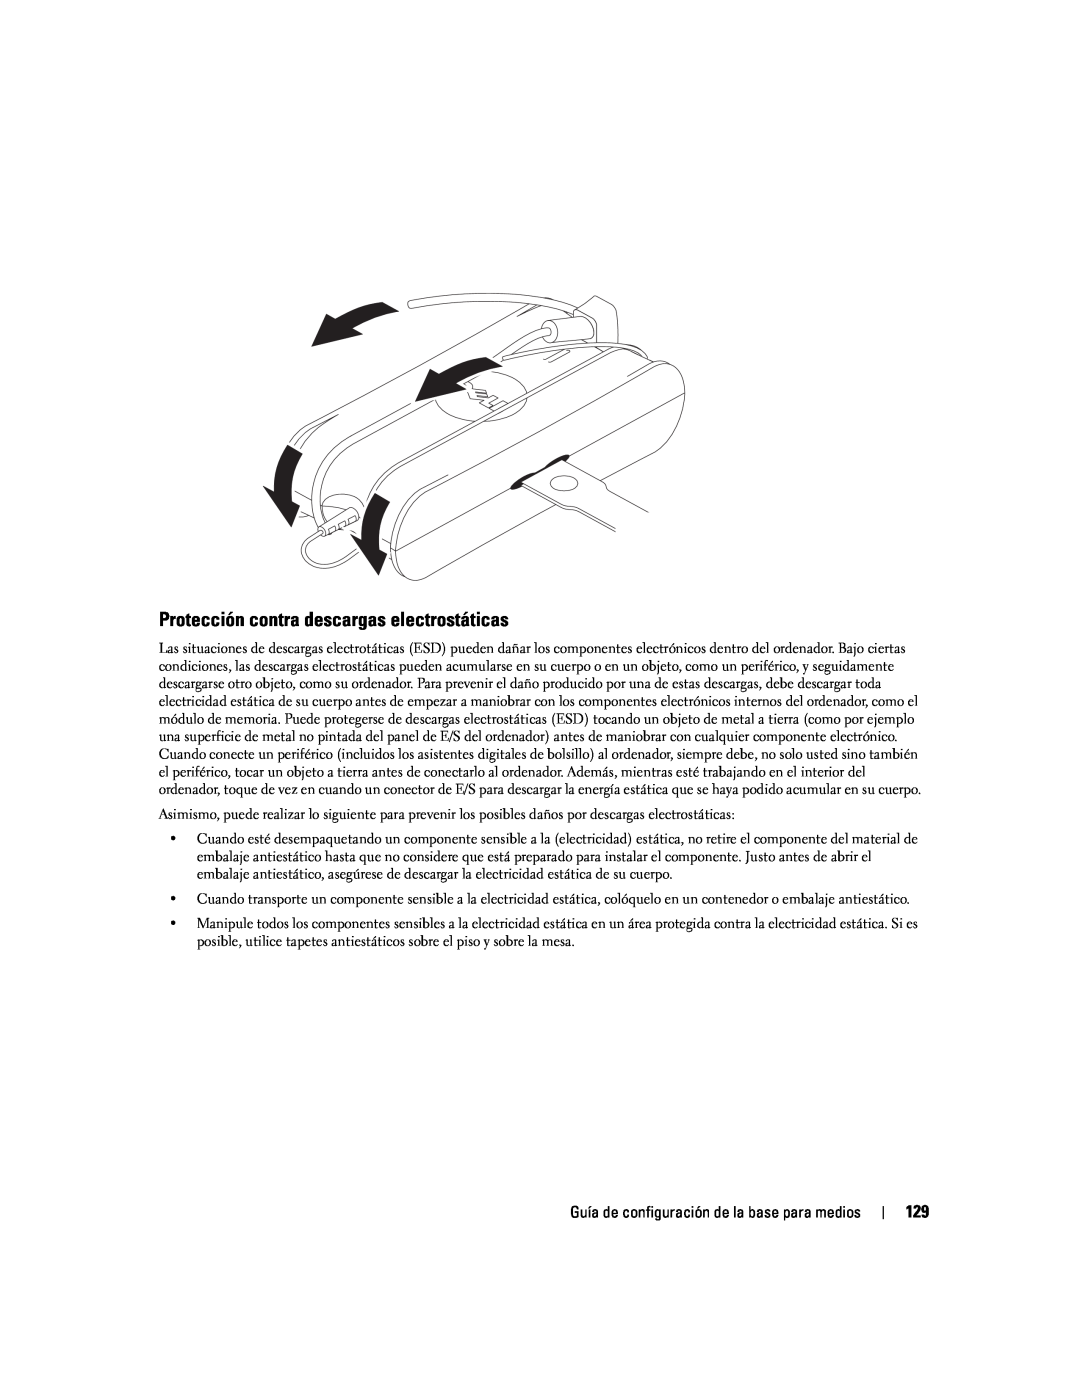 Dell Model PR09S setup guide Protección contra descargas electrostáticas 